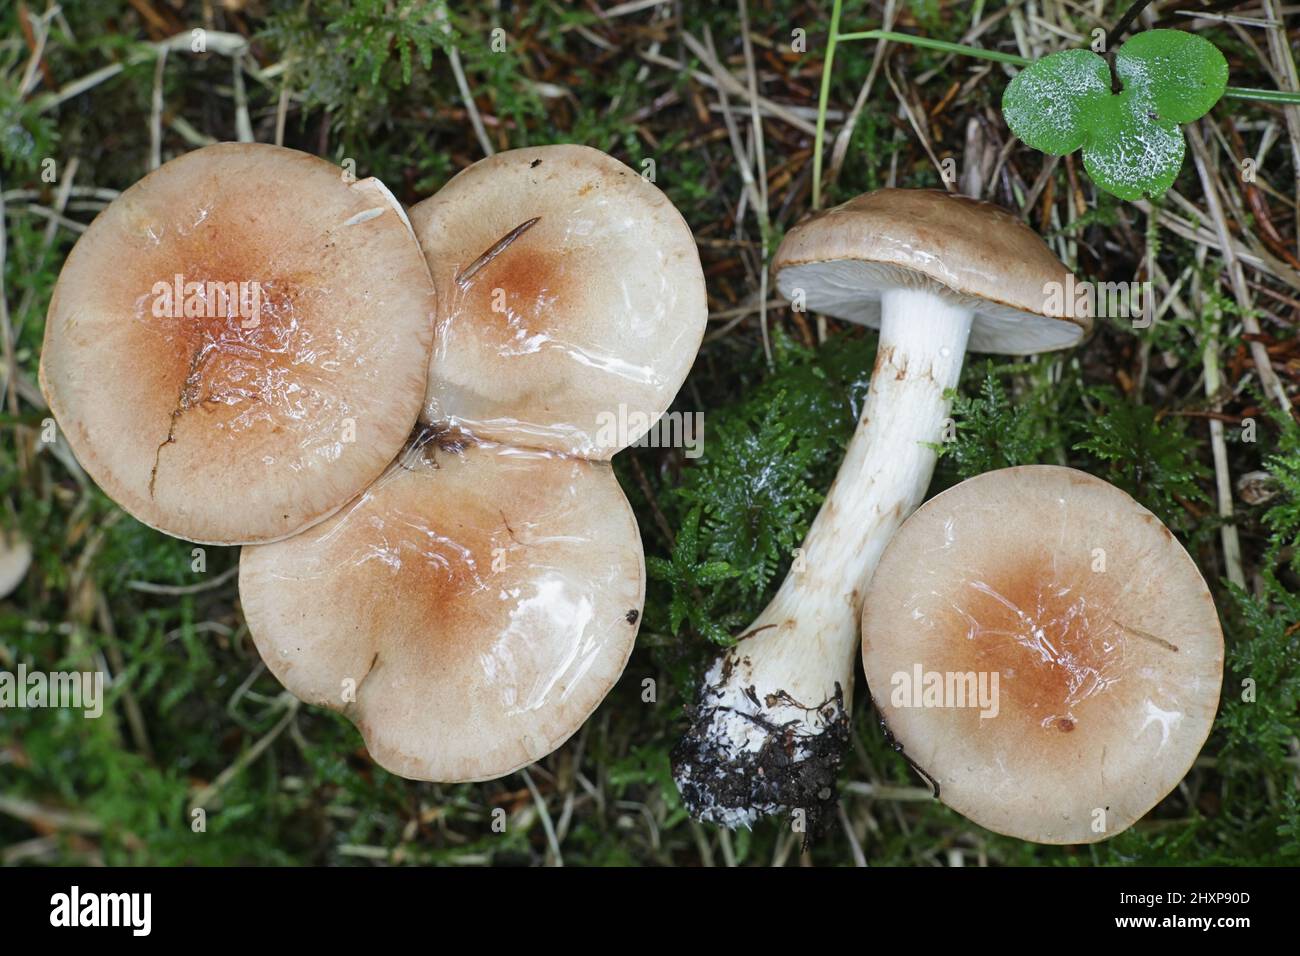 Hebeloma mesophaeum, connu comme poisonpie voilées ou empoisonner pie, de la Finlande aux champignons sauvages Banque D'Images